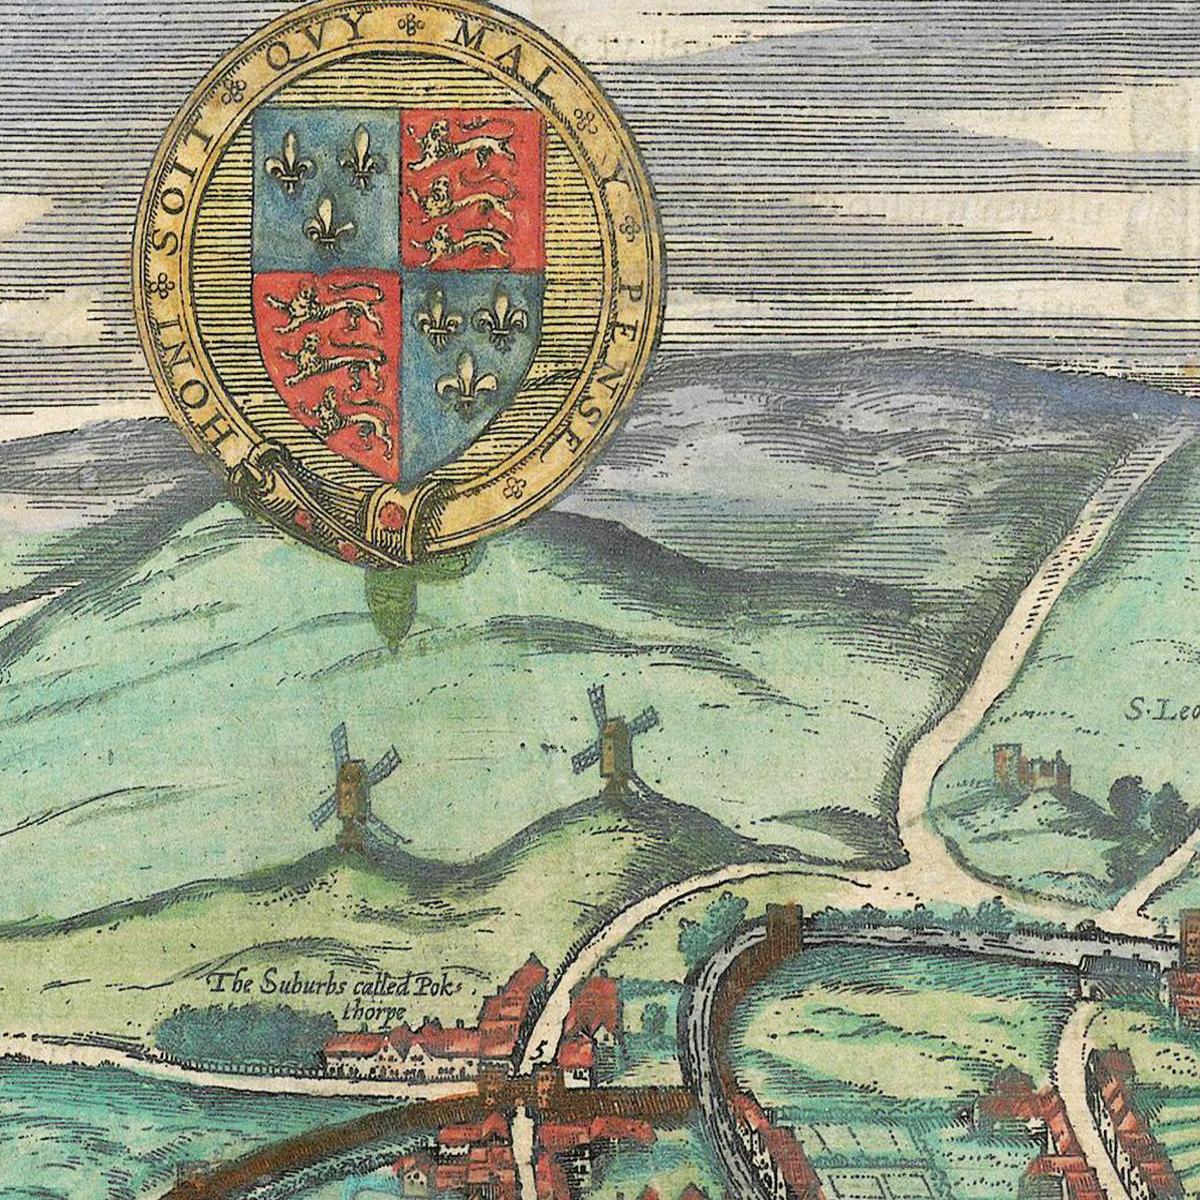 Historische Stadtansicht Norwich um 1609